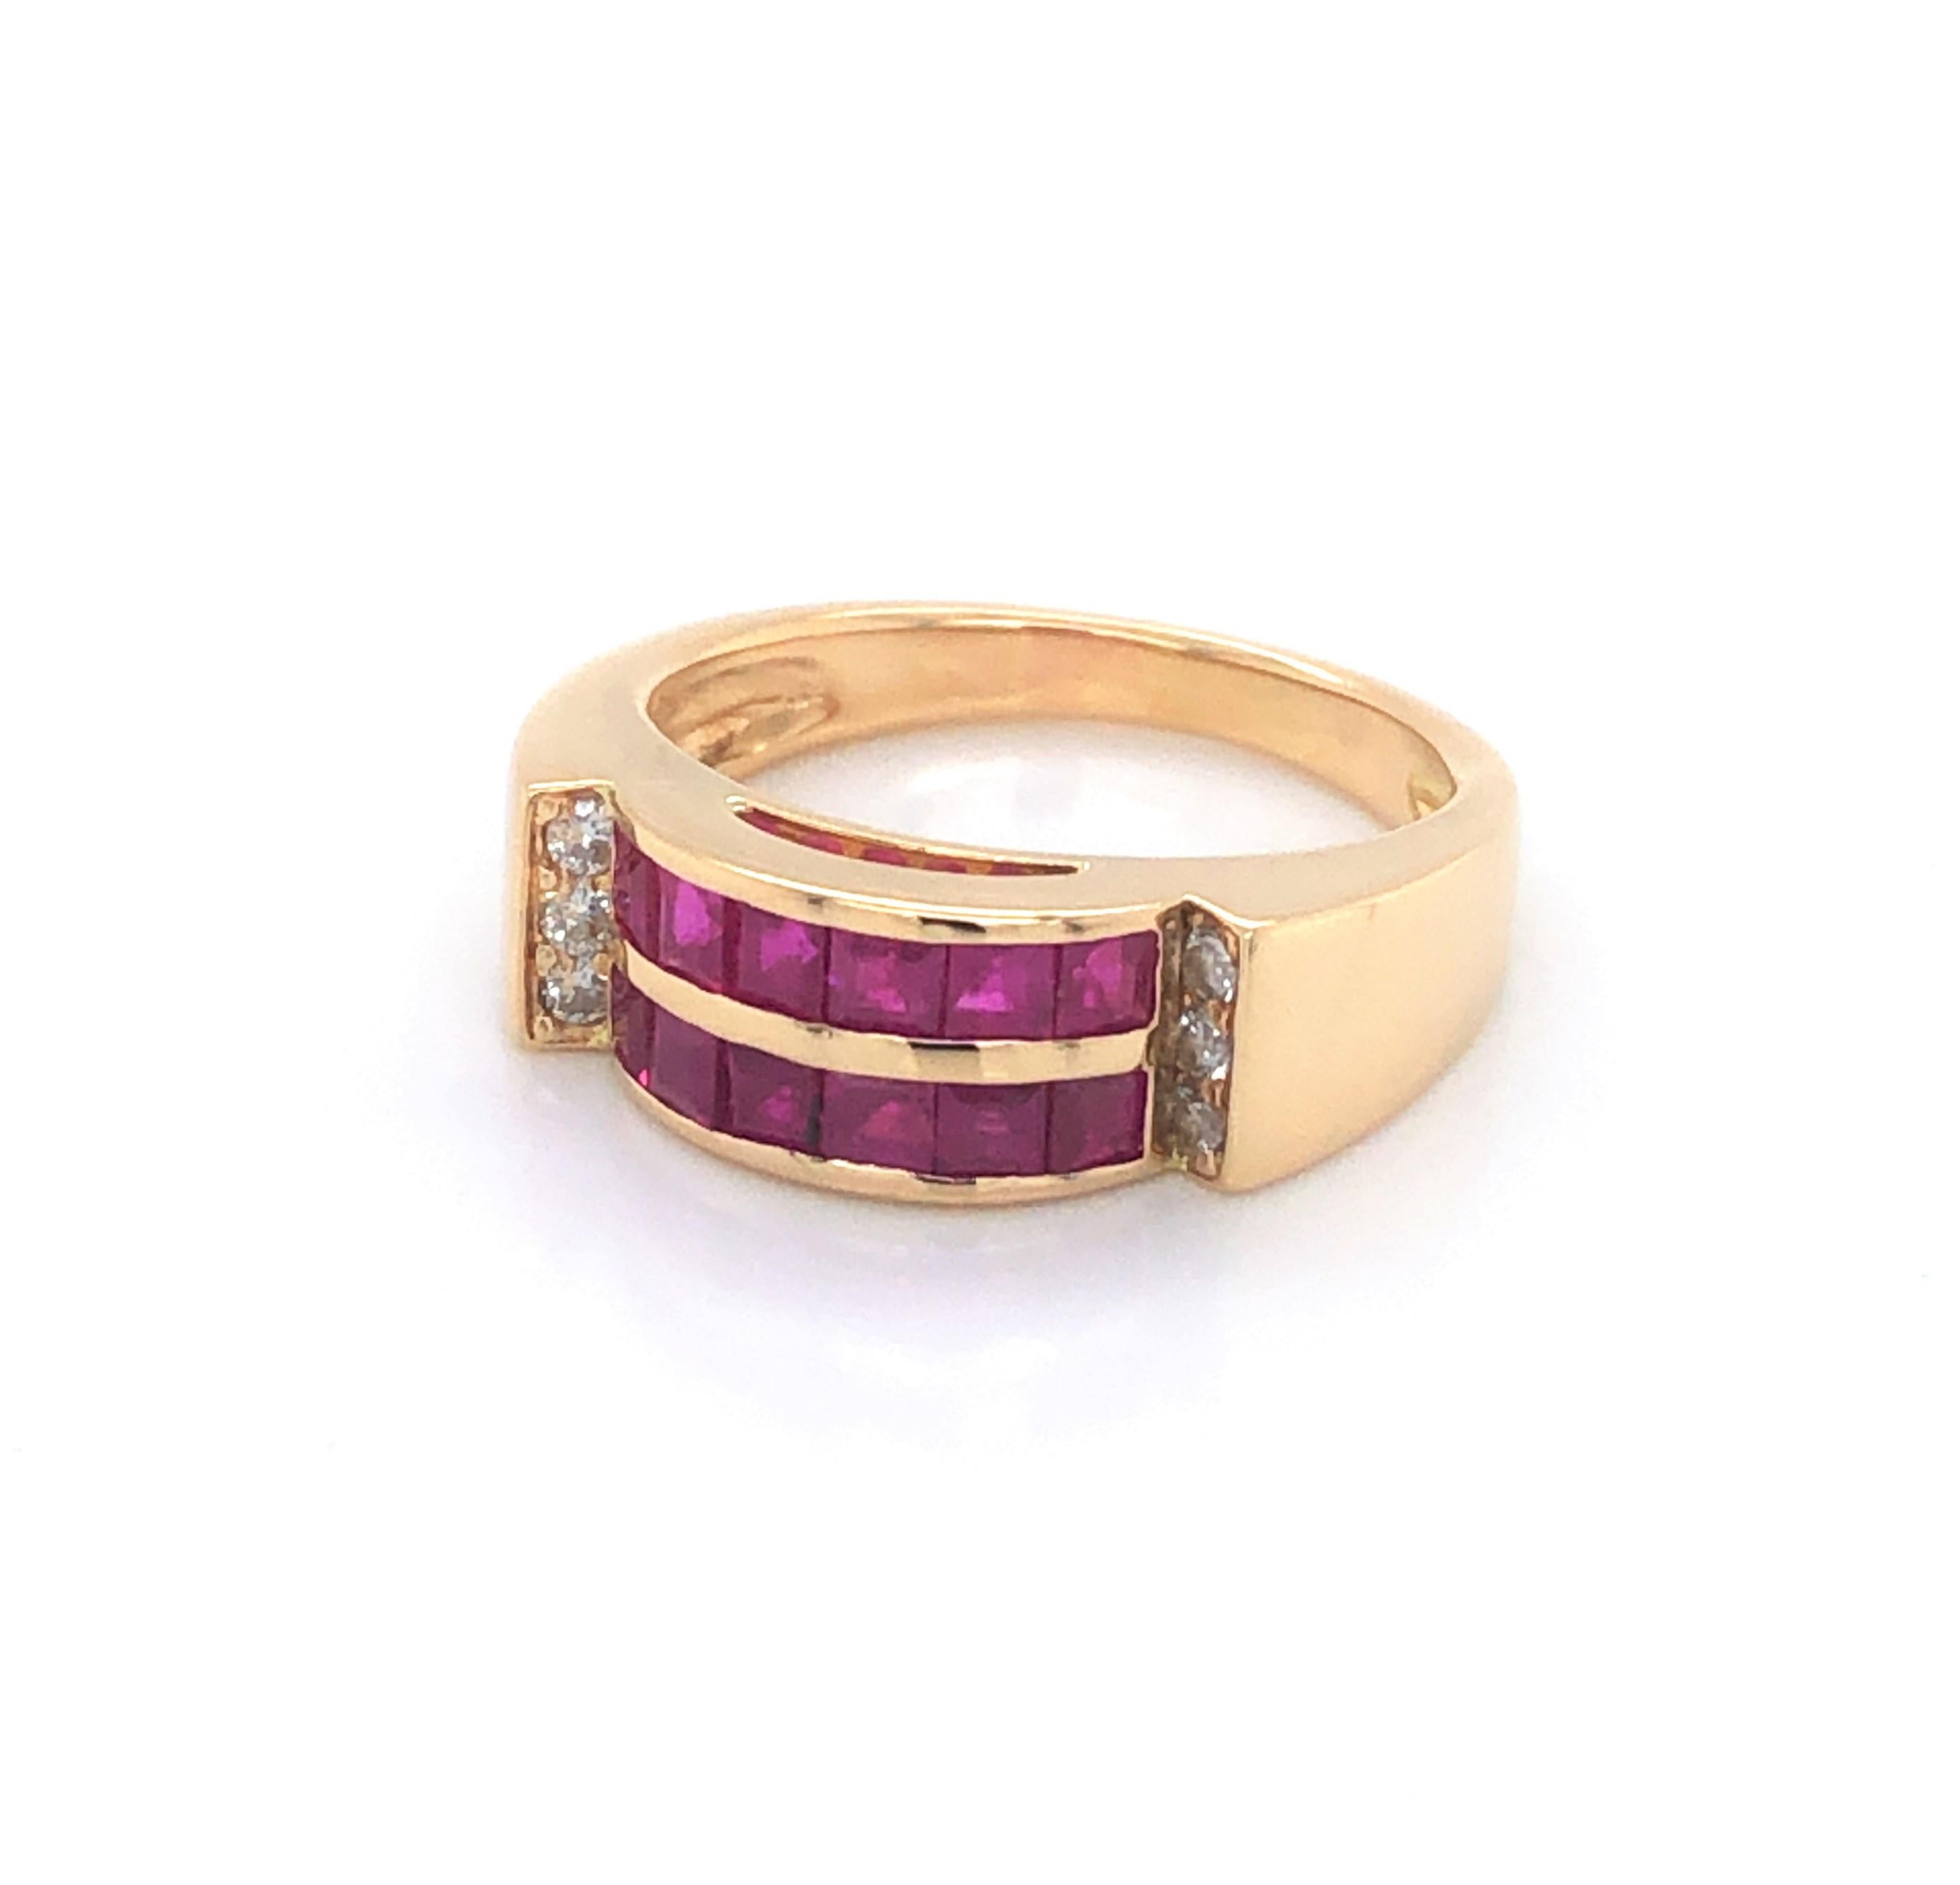 Die rosaroten Rubine, die in diesem Ring im zeitgenössischen Stil mit rund geschliffenen Diamanten akzentuiert sind, sind im Dutzend besser. Diese fröhliche Band ist aus achtzehn Karat 18k Gelbgold und mit zwei Reihen von sechs jeweils .02 Karat